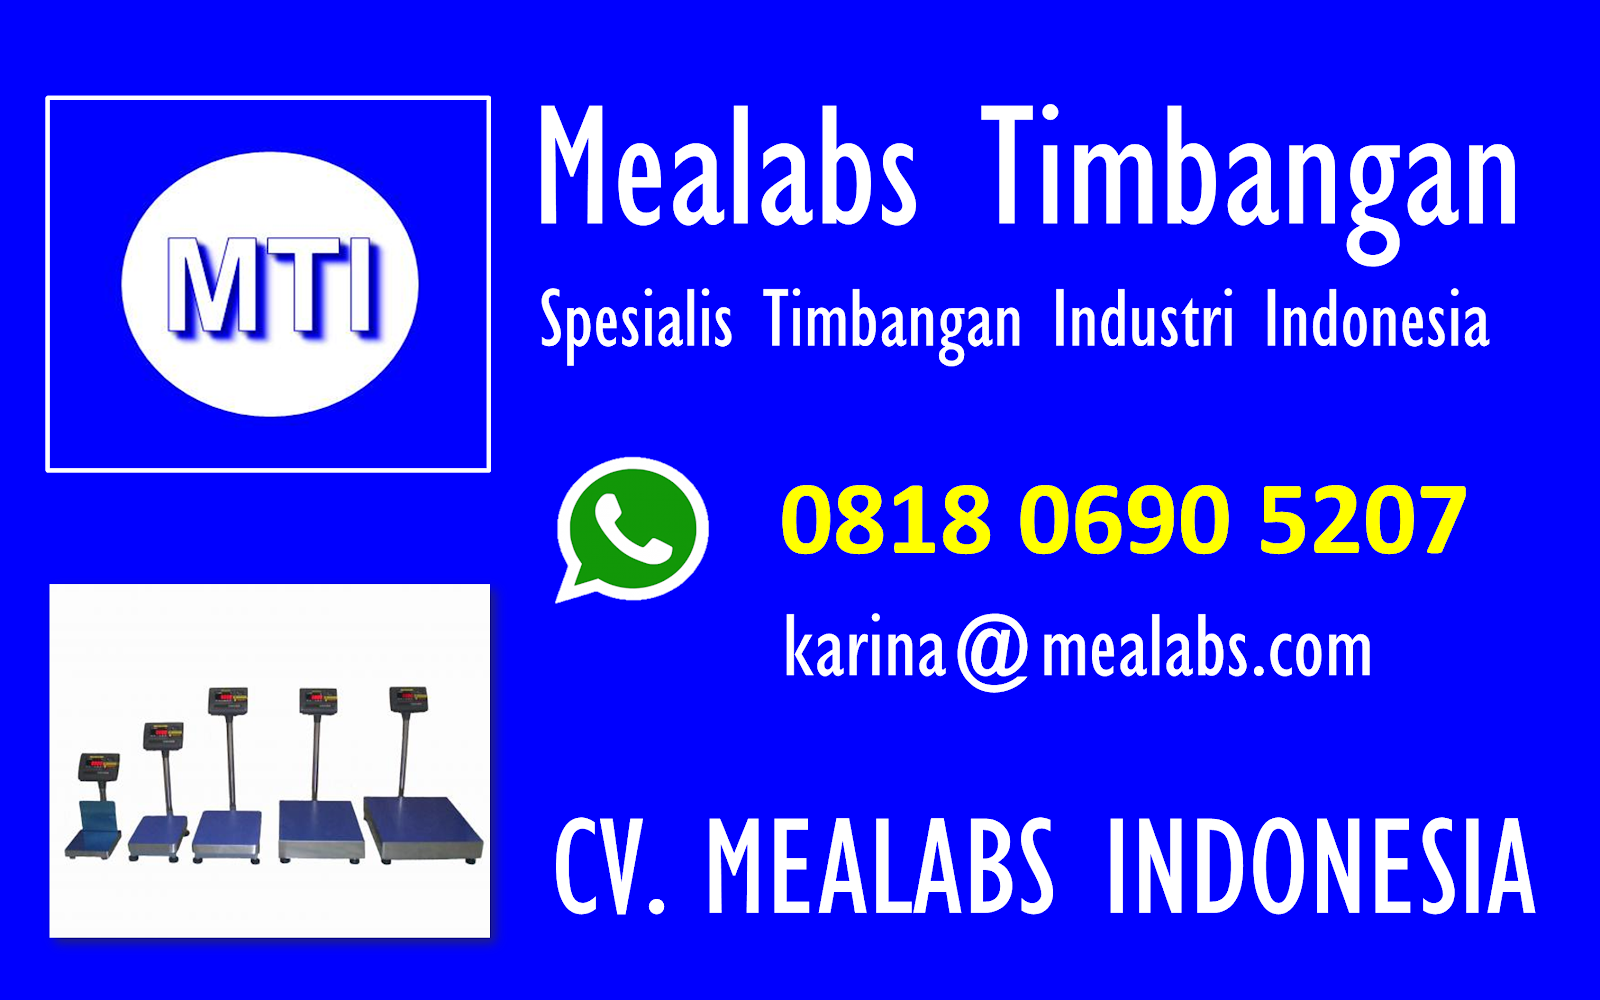 contact Mealabs Timbangan Indonesia